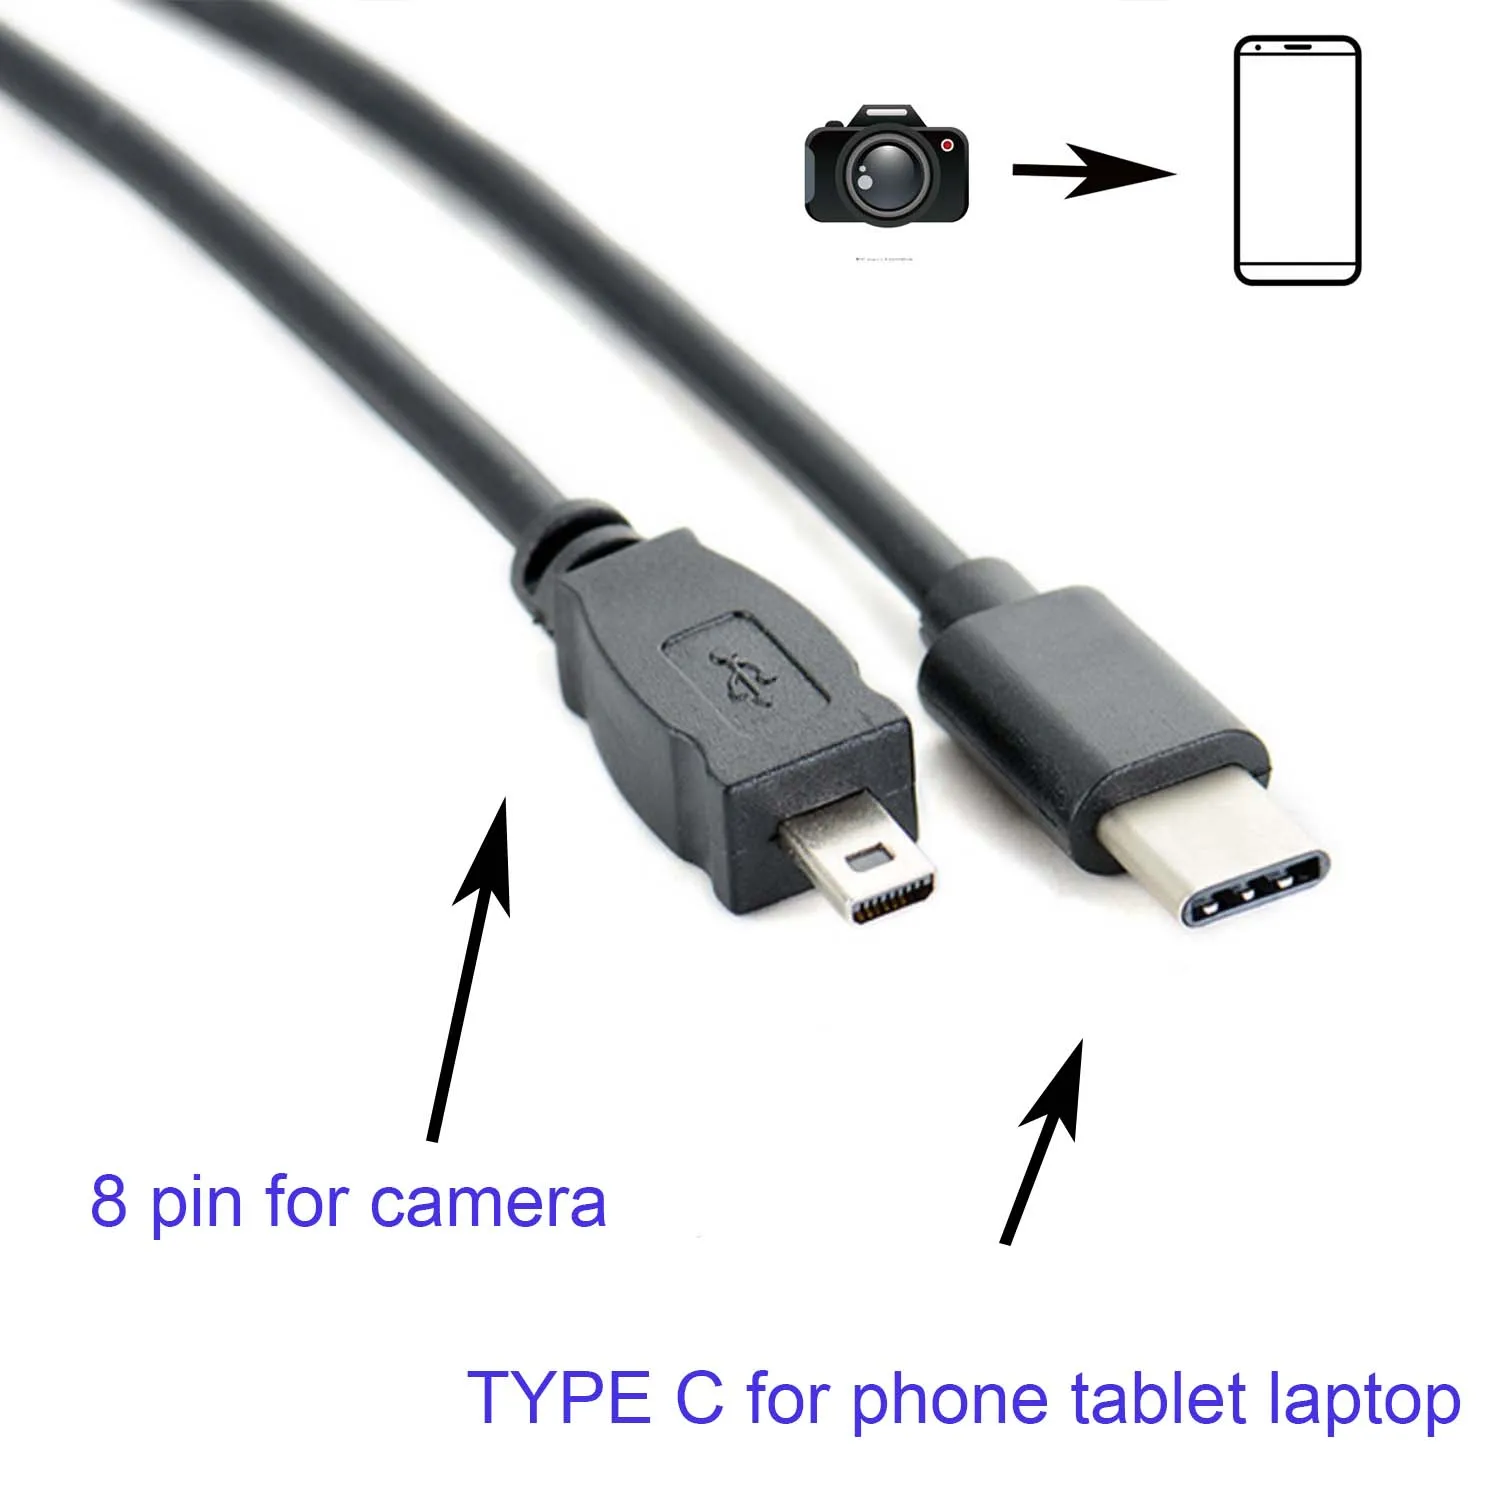 Тип C OTG кабель для Nikon UC-E6 Coolpix P2 Coolpix P50 Coolpix P90P5100 s9 камеры на телефон редактировать фото и видео